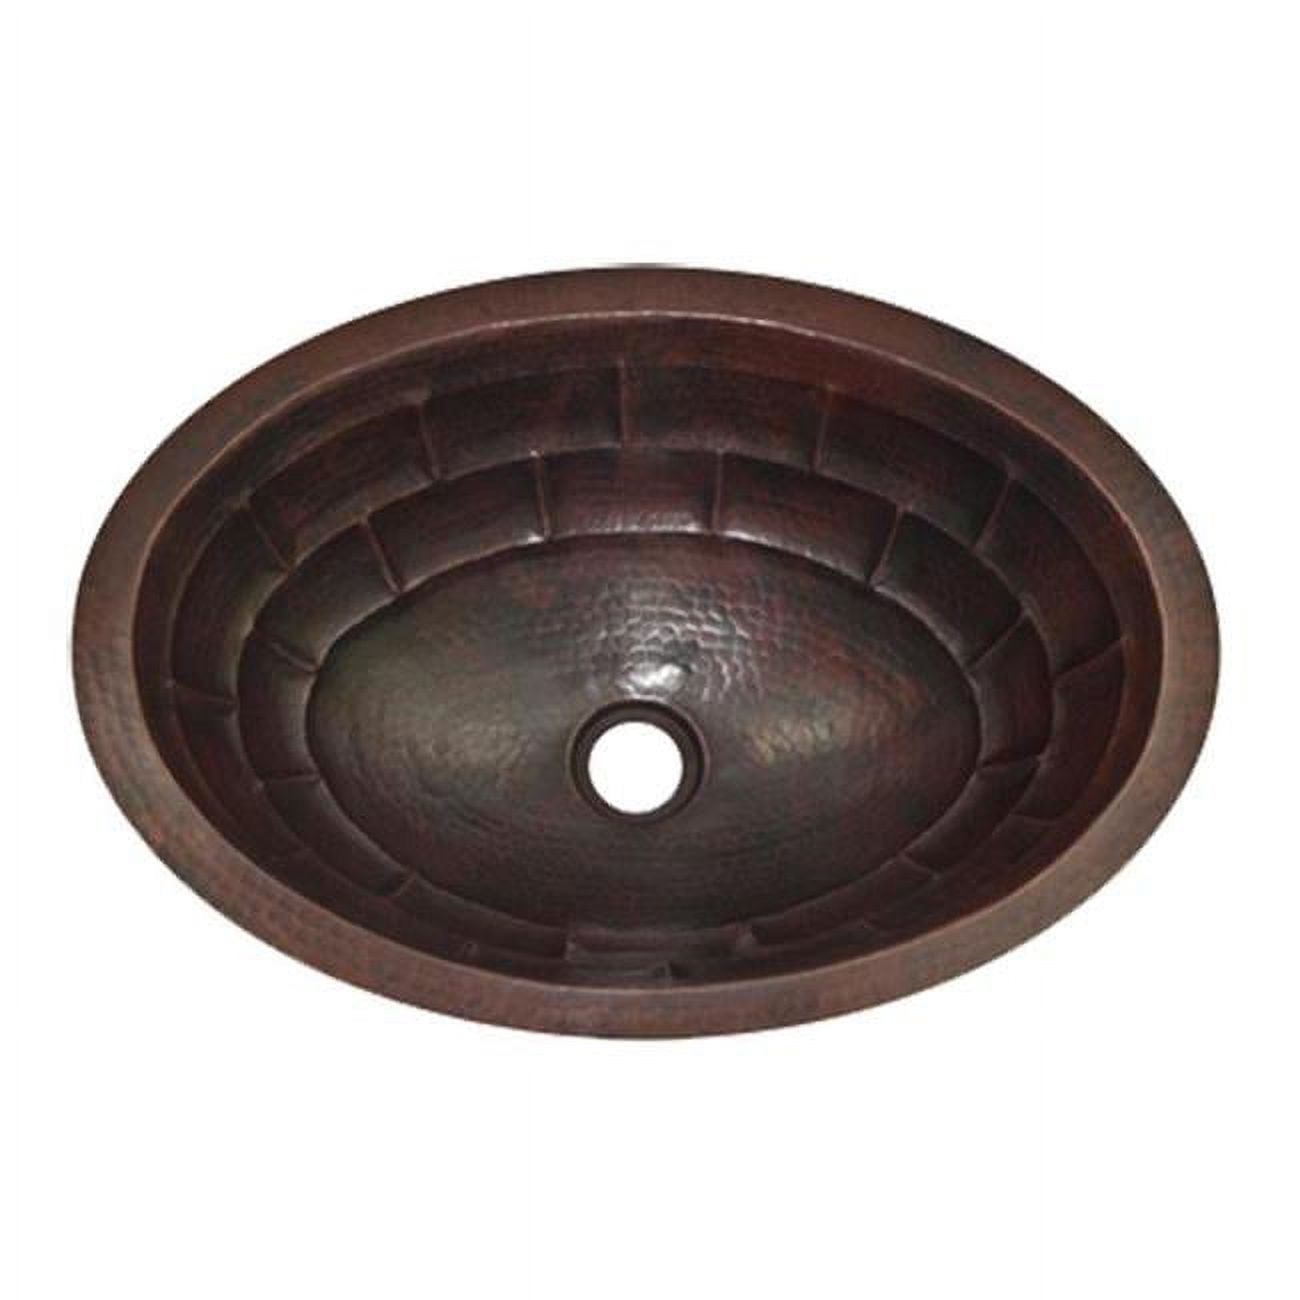 Cos-ts-17-fl-db Copper Oval Bath Sink, Dark Brown - Turtle Shell Design - 5.5 X 12.5 X 17 In.